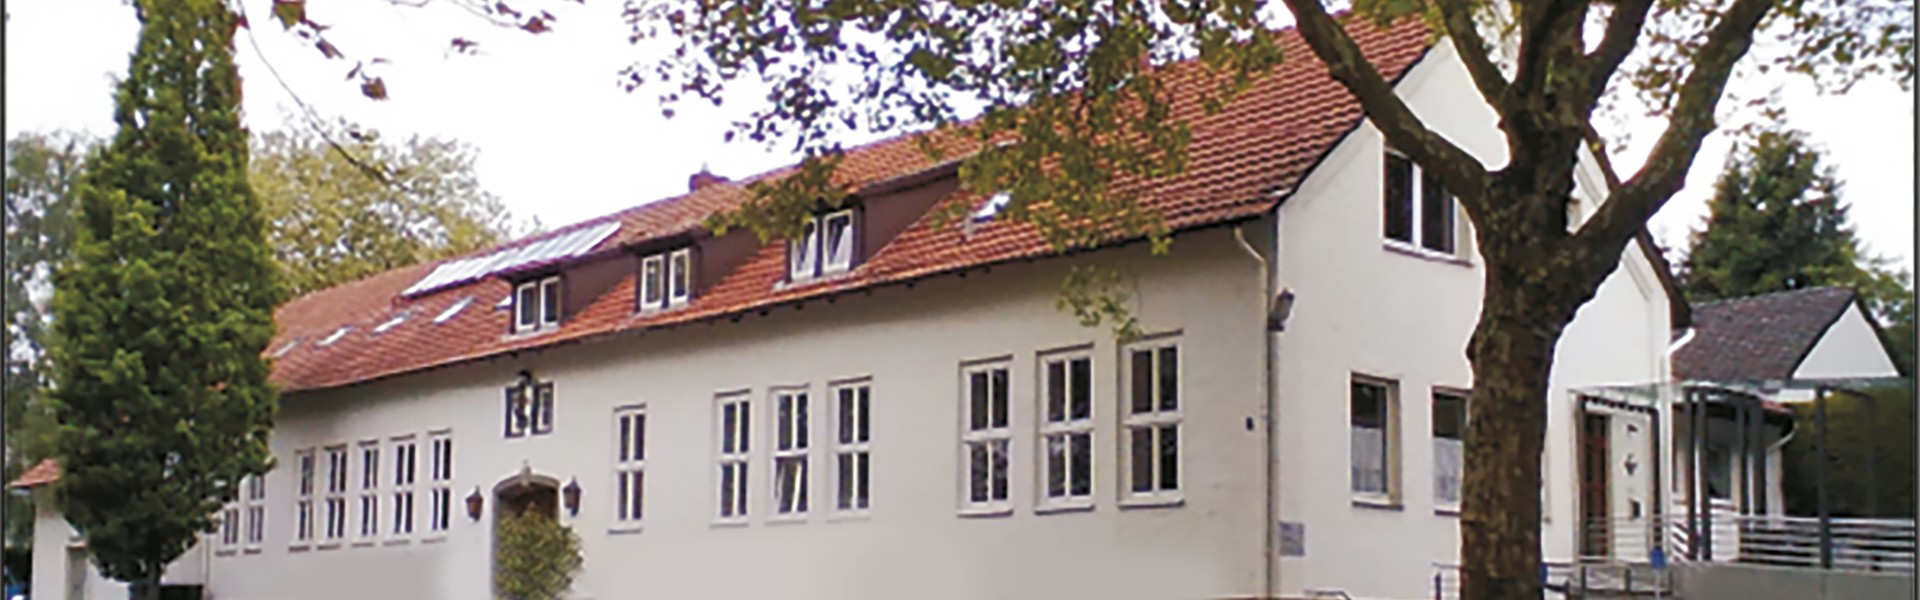 Dorftreeffpunkt-Gemeindehaus-Foto-header